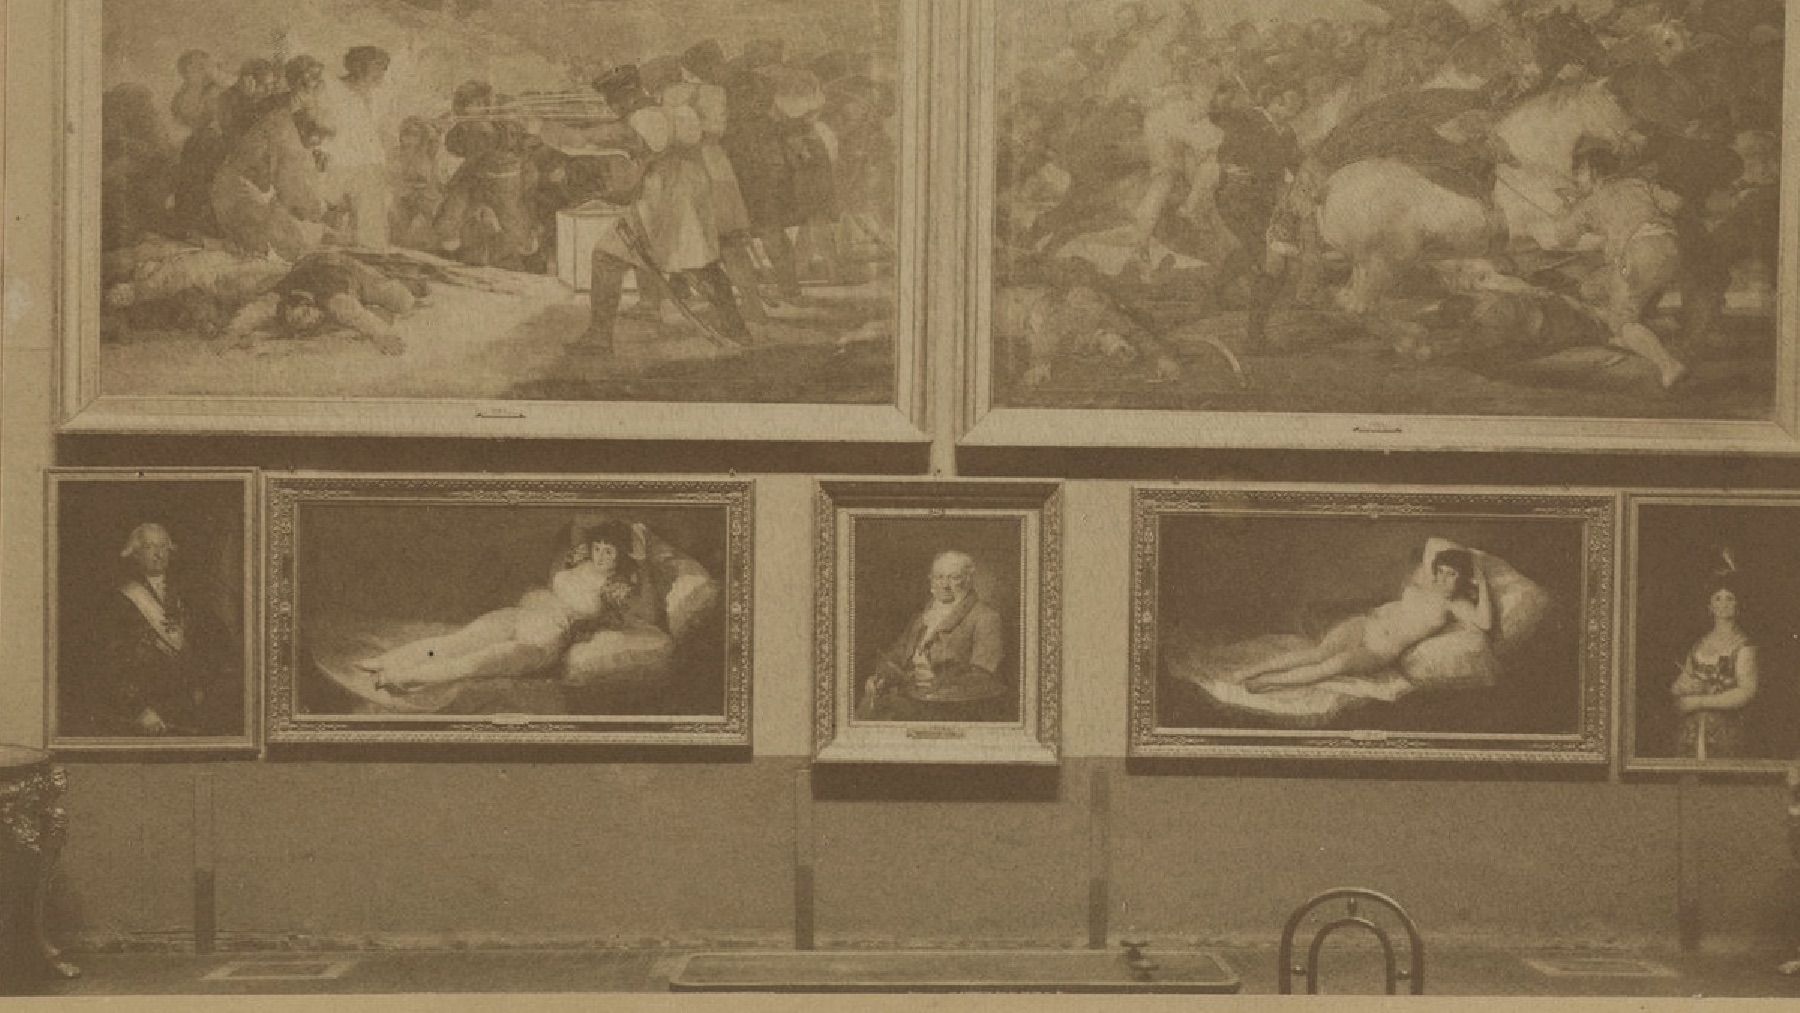 Los vándalos del Museo del Prado causaron daños en marcos de más de 100 años de antigüedad